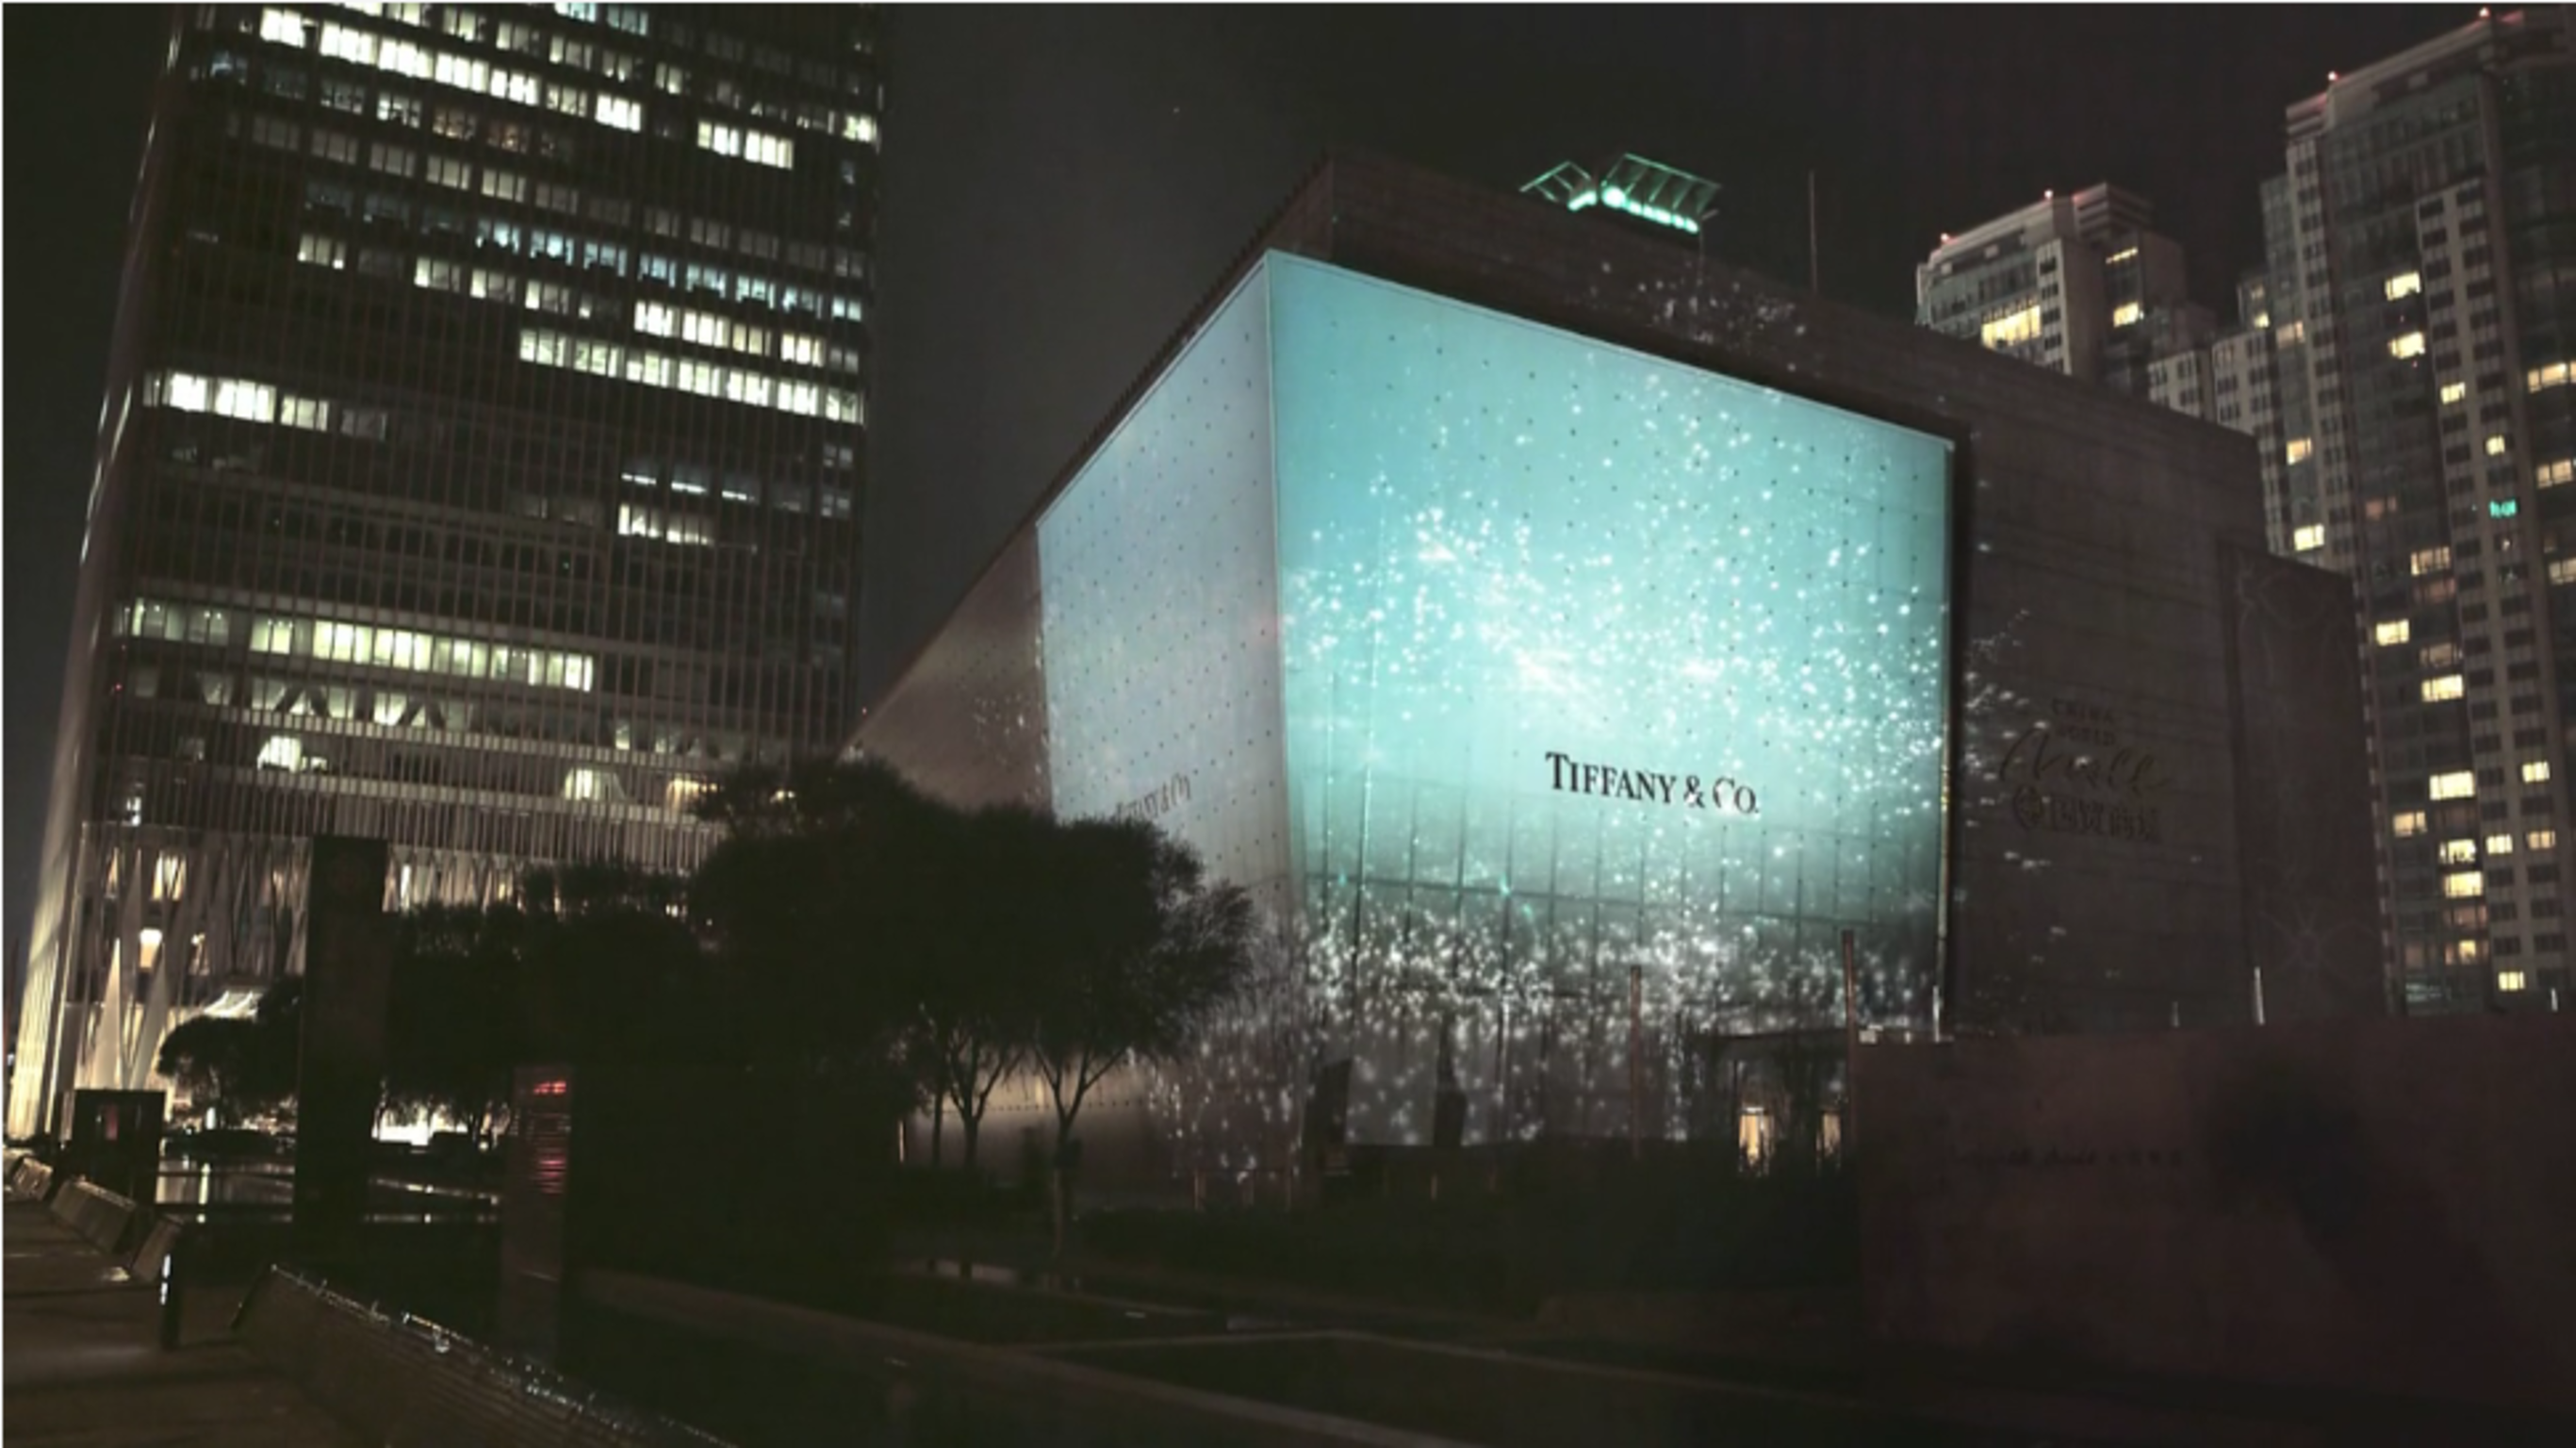 Tiffany & Co. Campaign